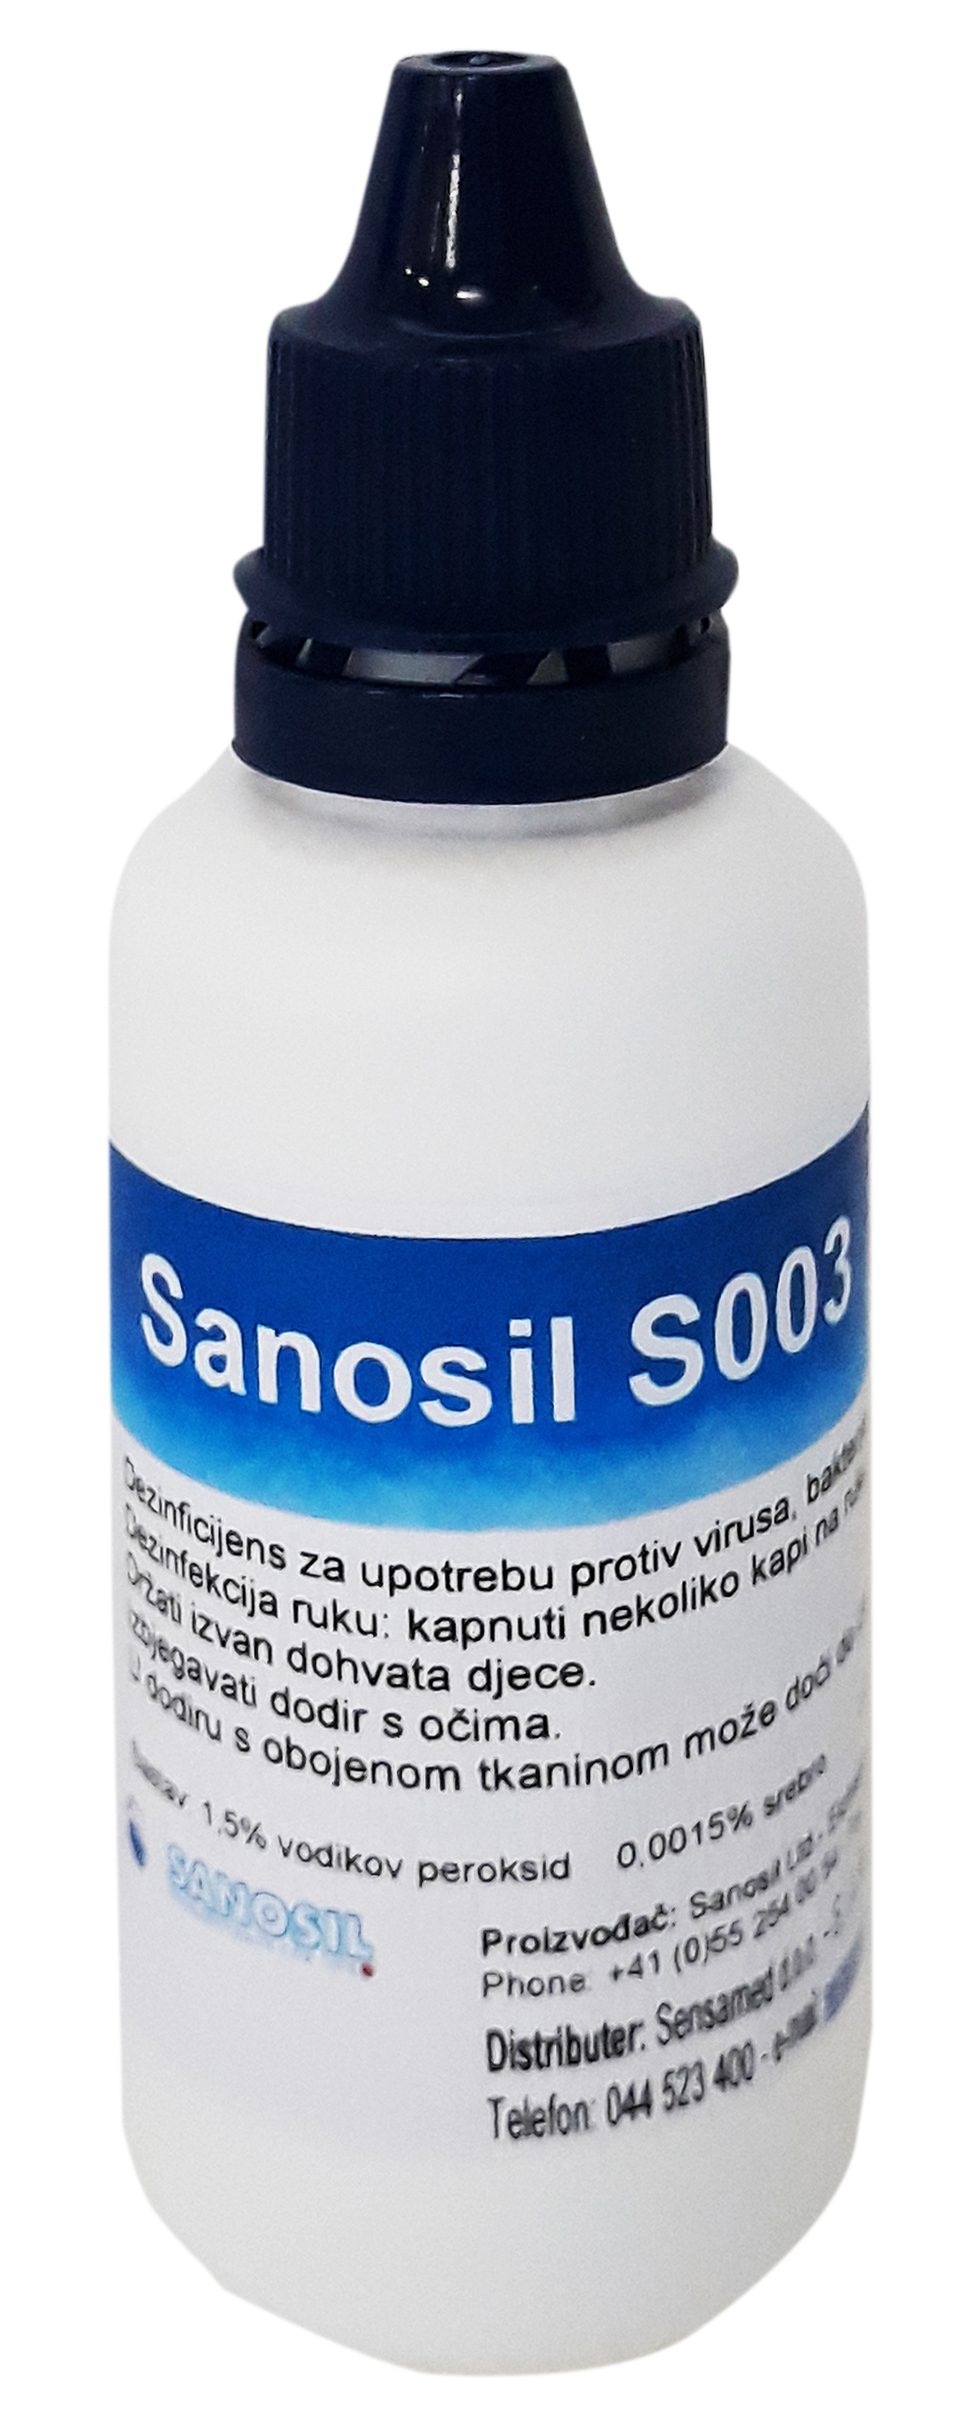 Sanosil S003 sredstvo za dezinfekciju površina i ruku - pakovanje 50 ml